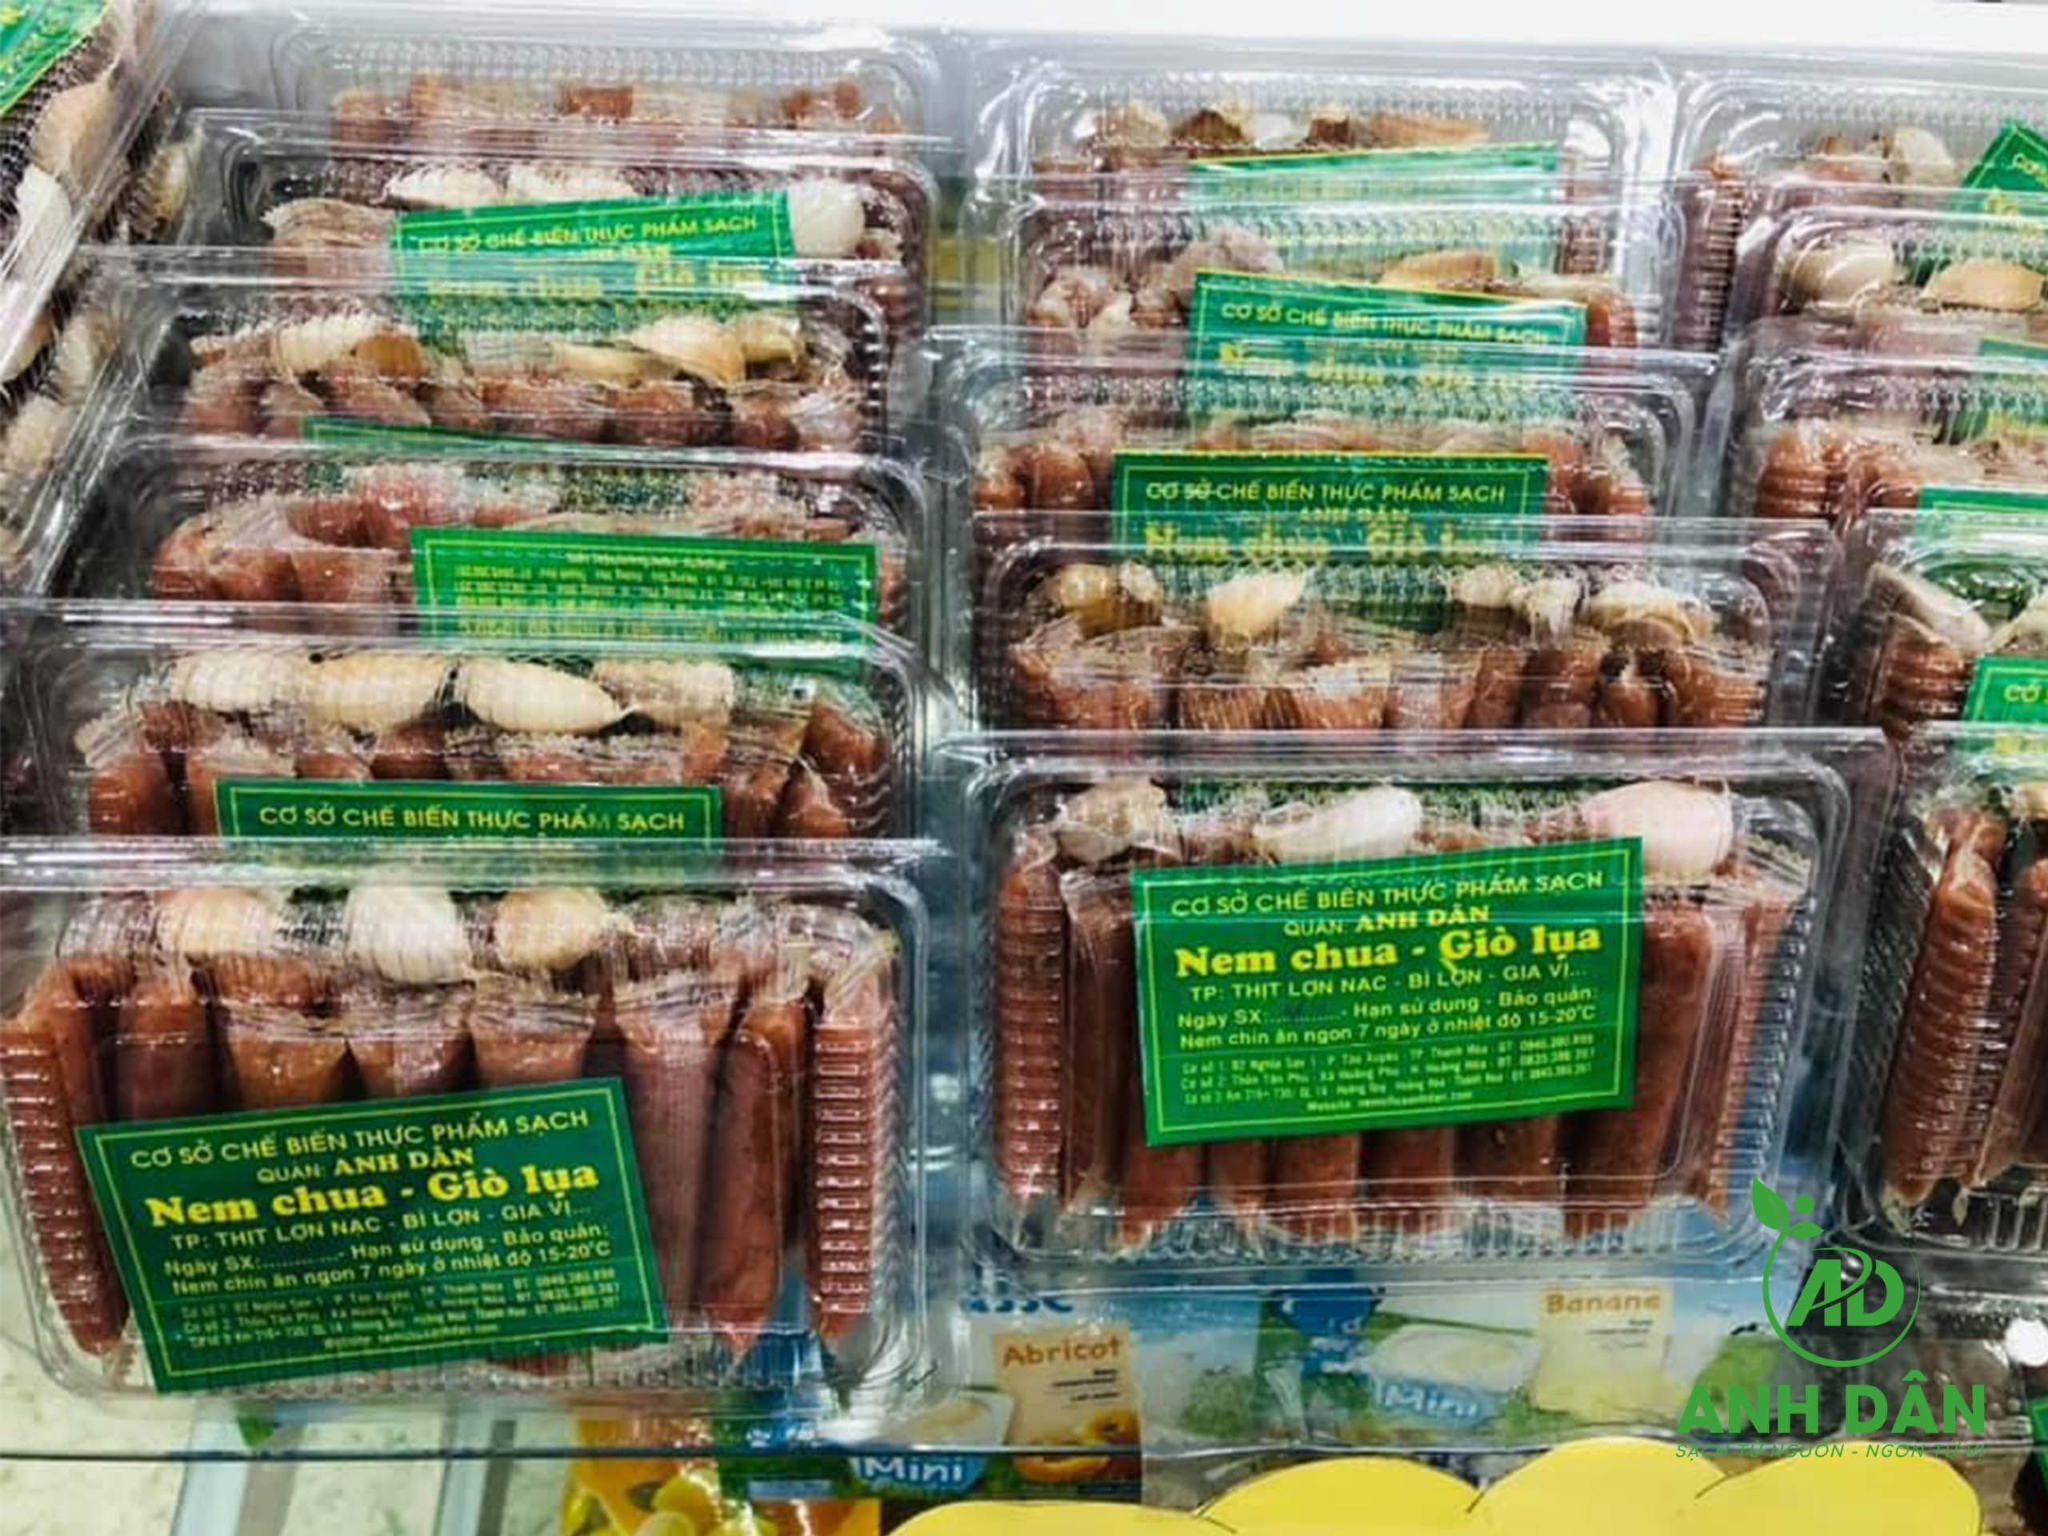 Nem chua Anh Dân - Thương hiệu số 1 về các sản phẩm nem - giò - xúc xích tại Thành phố Thanh Hóa